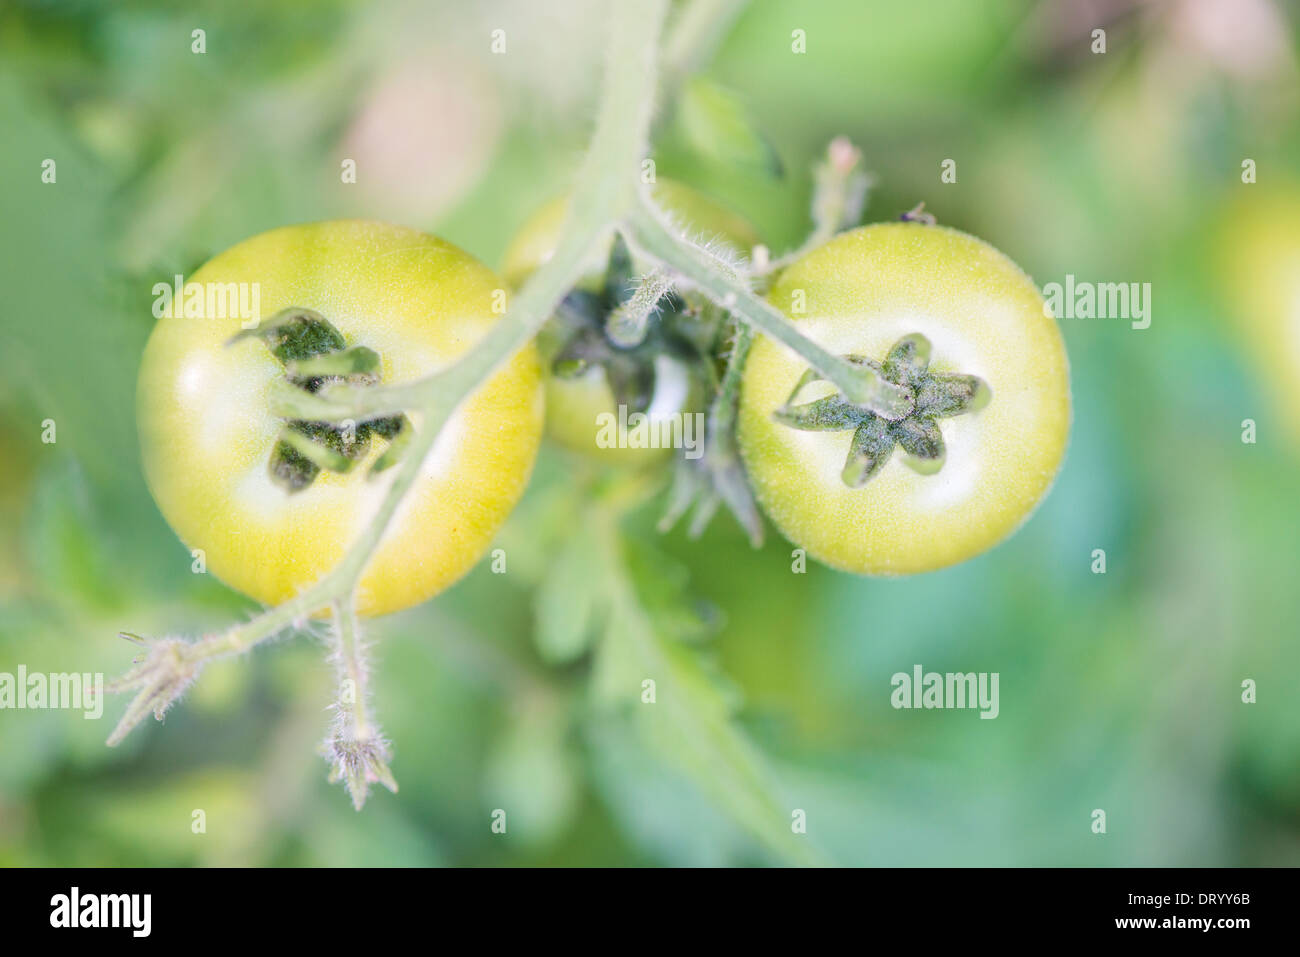 Vue de dessus de la croissance organique de tomates vertes dans le jardin Banque D'Images